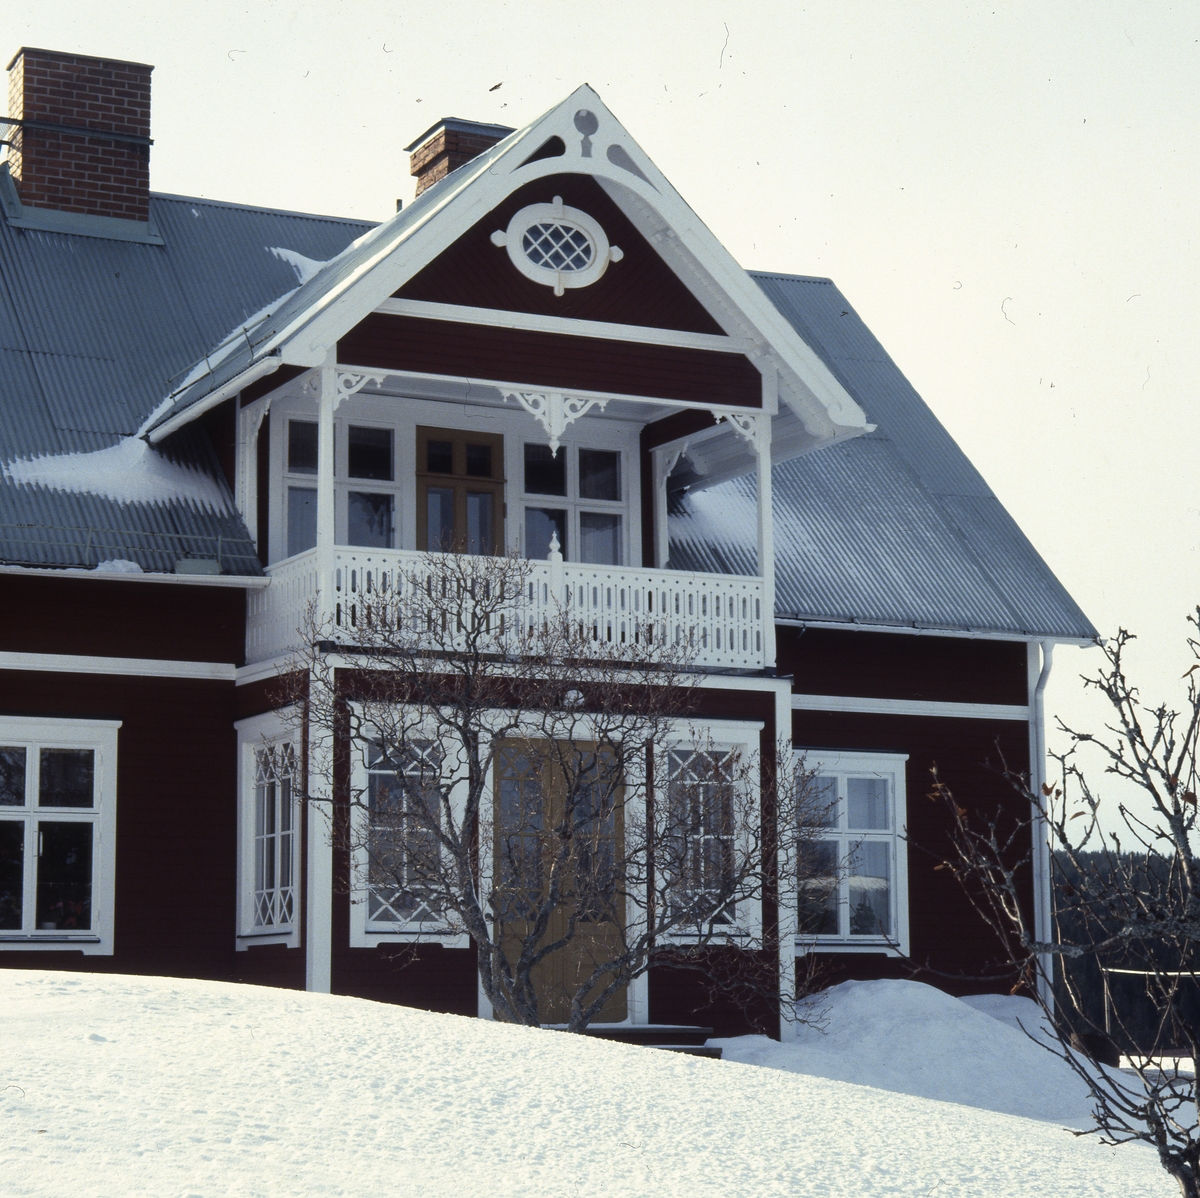 Huset "Villa" i Flästa i Arbrå i vinterskrud, 1982. Huset är rikt dekorerat med snickarglädje på förstukvist och balkong.